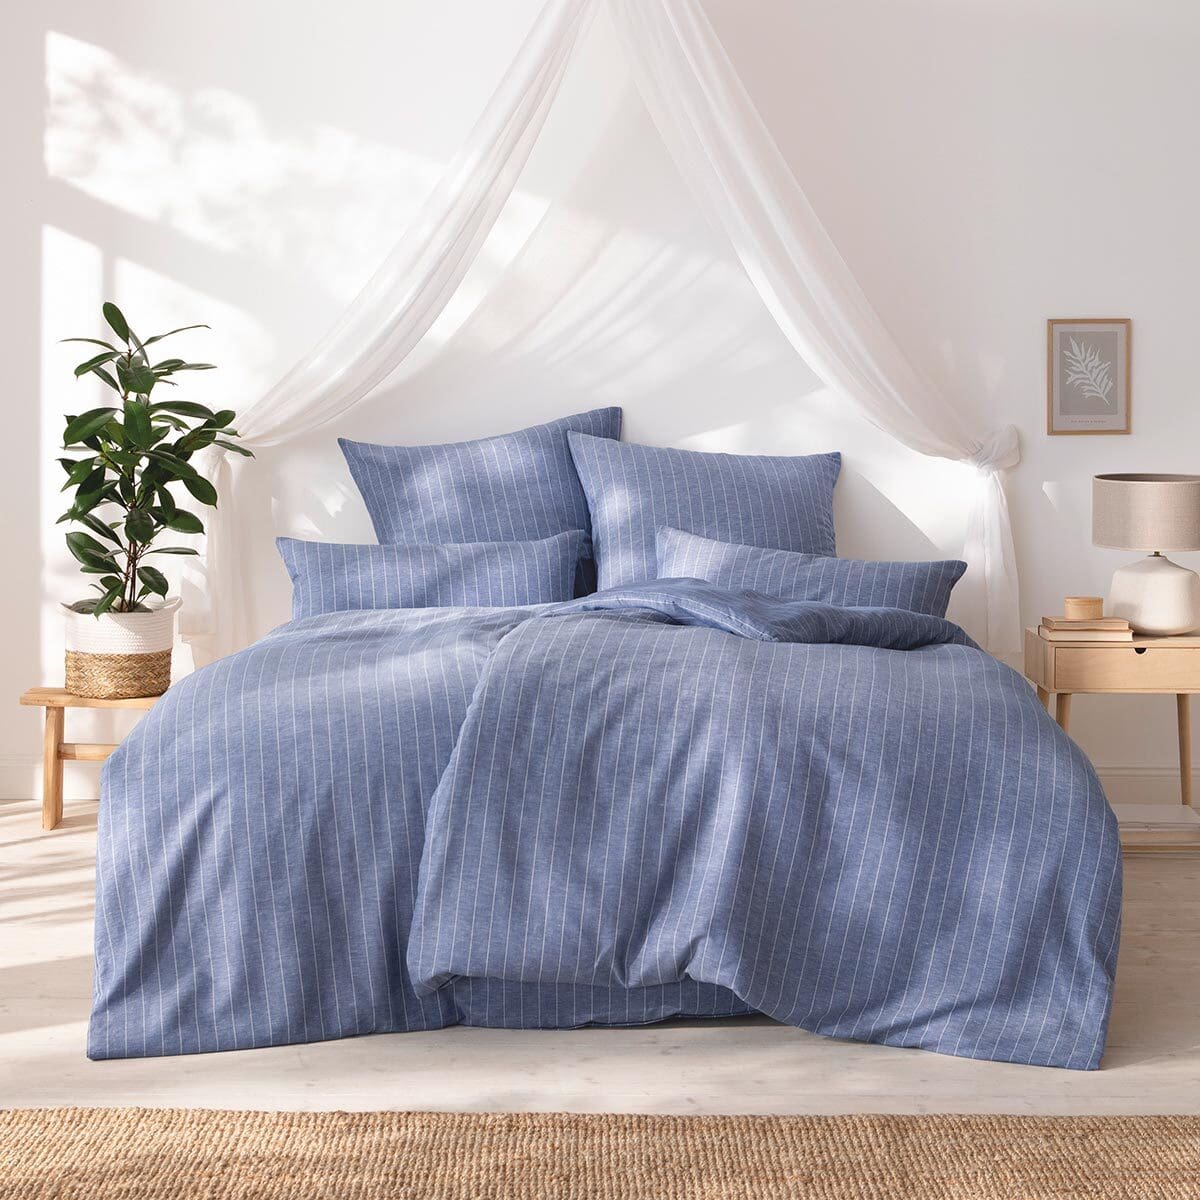 Bettwäsche bei online Estella kaufen blau Halbleinen Bettwaren Tavira günstig Shop